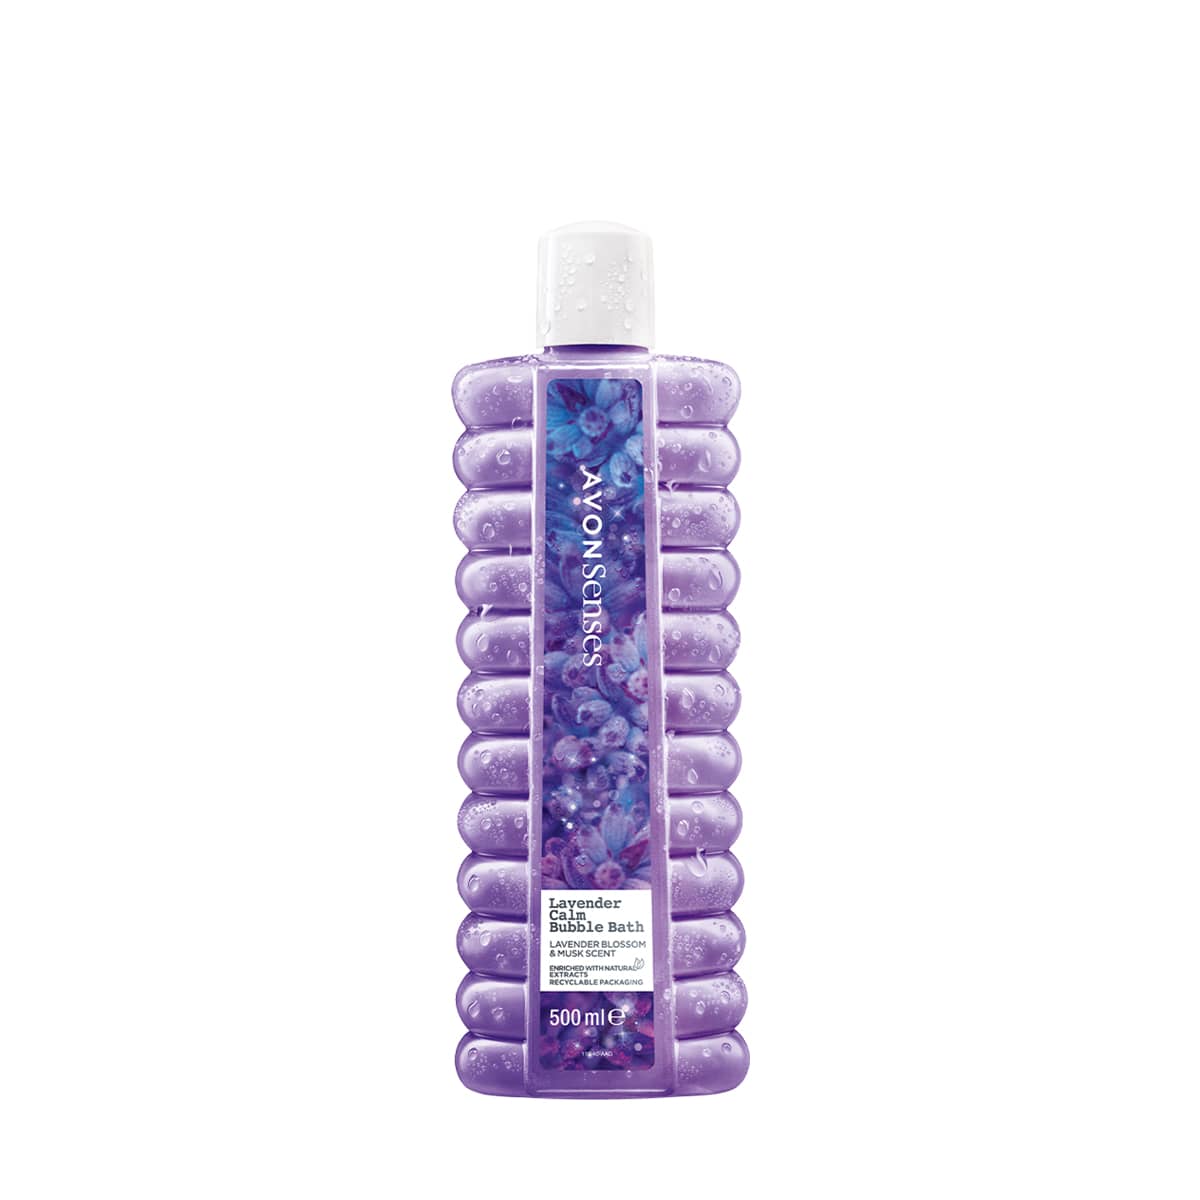 Senses Lavender Calm Bubble Bath 500ml